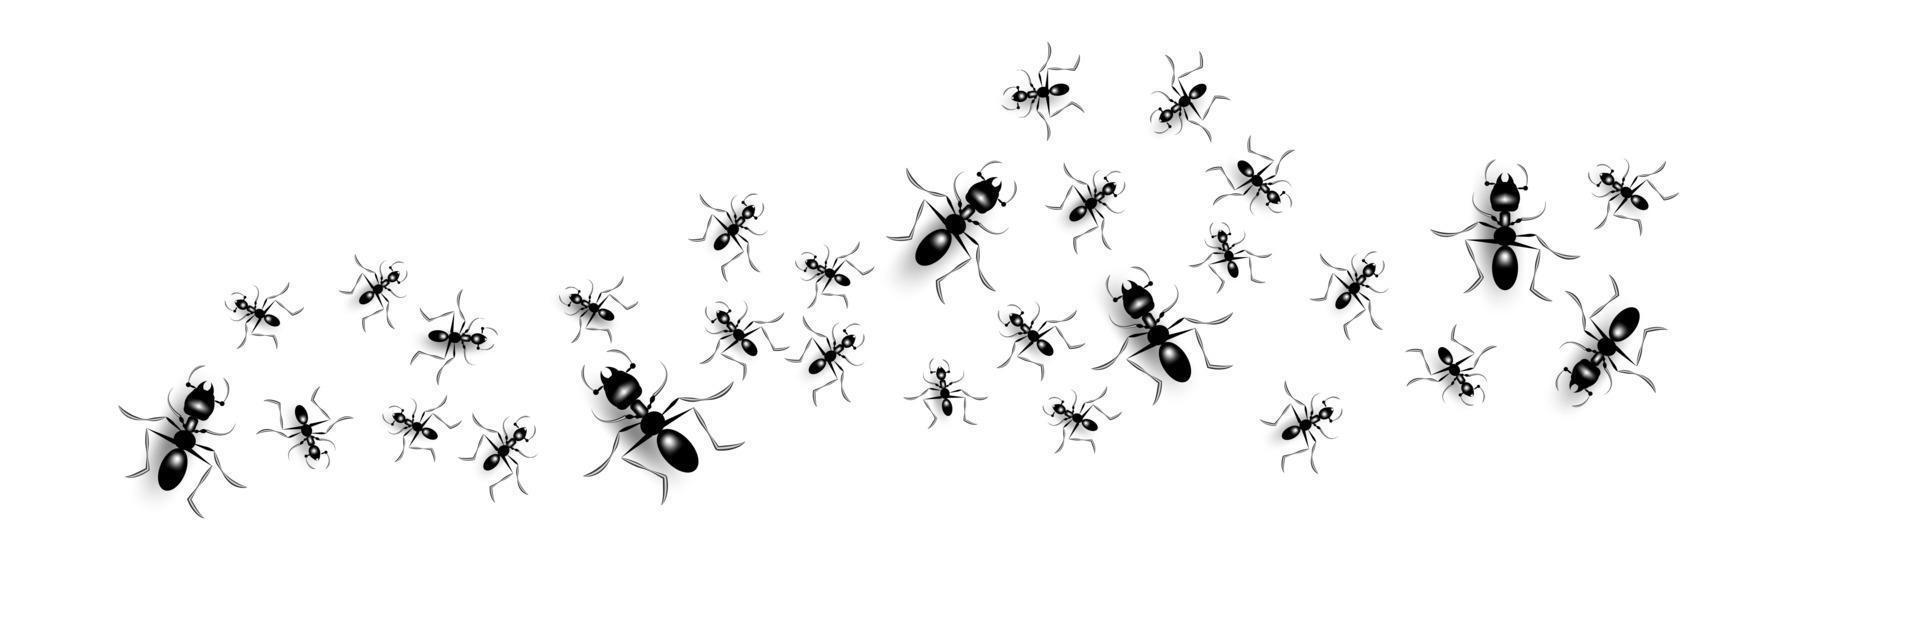 grupo de formigas pretas vetor